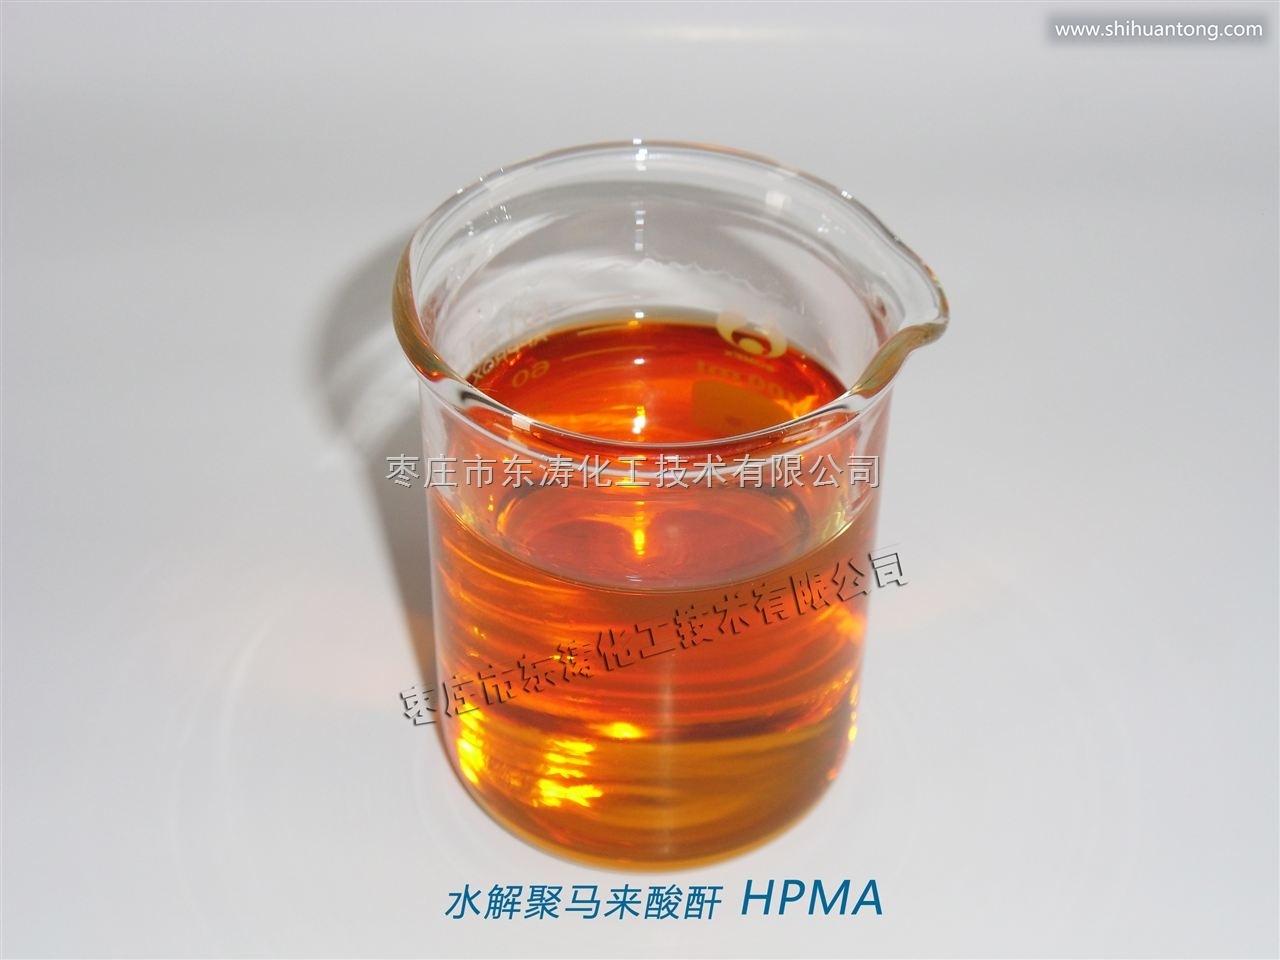 水解聚马来酸酐 HPMA-东涛化工